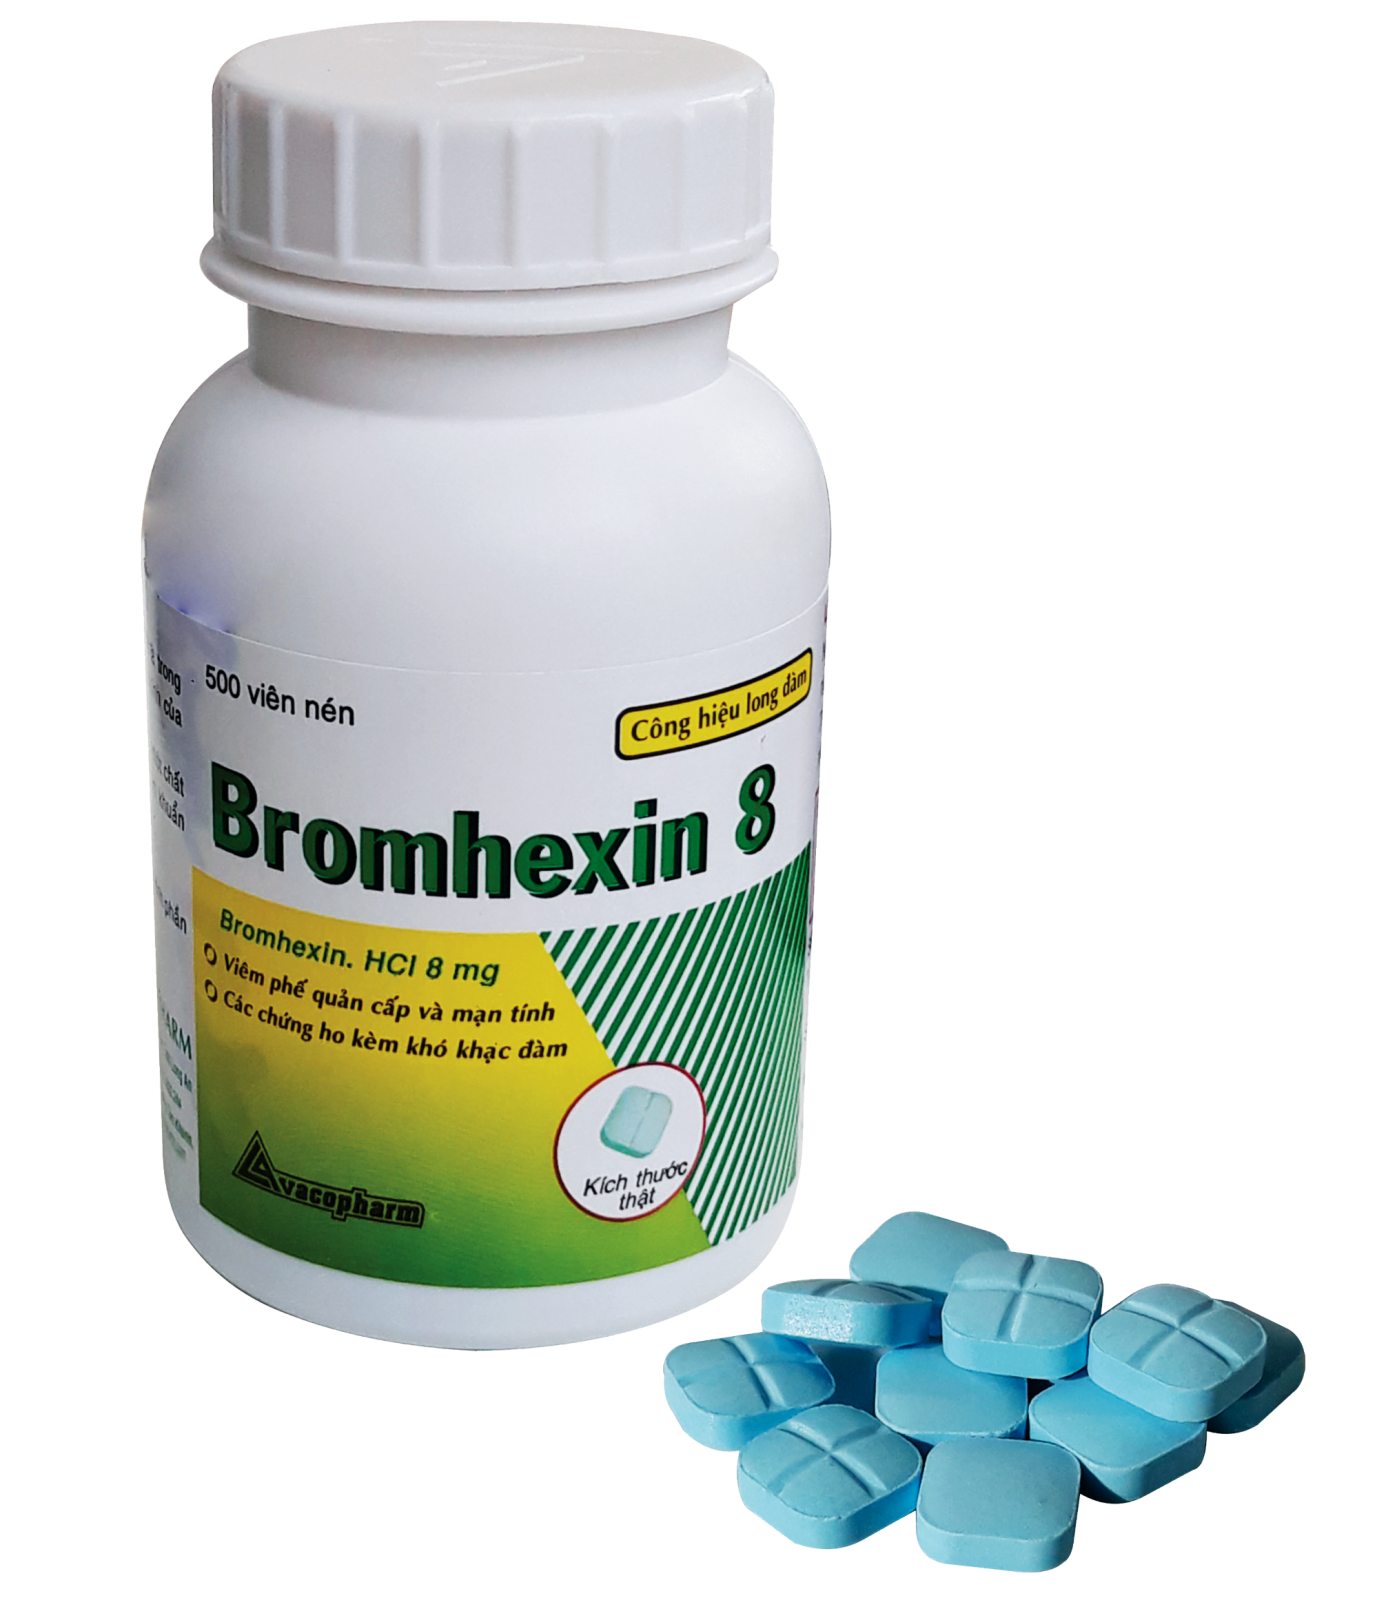 Thuốc bromhexin 8 mg có hiệu quả trong việc làm dịu triệu chứng ho không?
